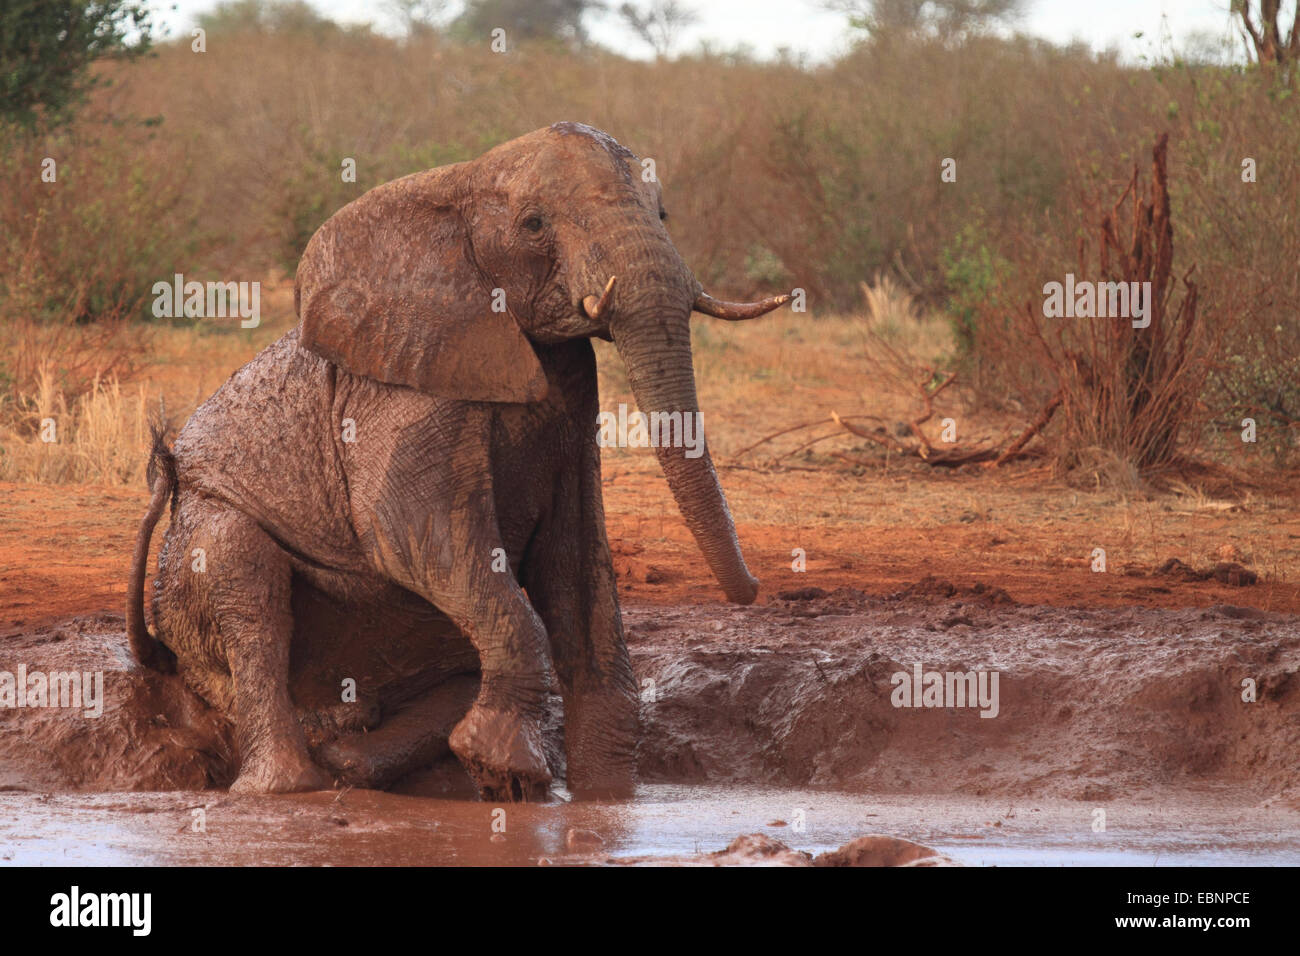 Elefante africano (Loxodonta africana), tomar un baño de barro, Kenya, el Parque Nacional de Tsavo East Foto de stock